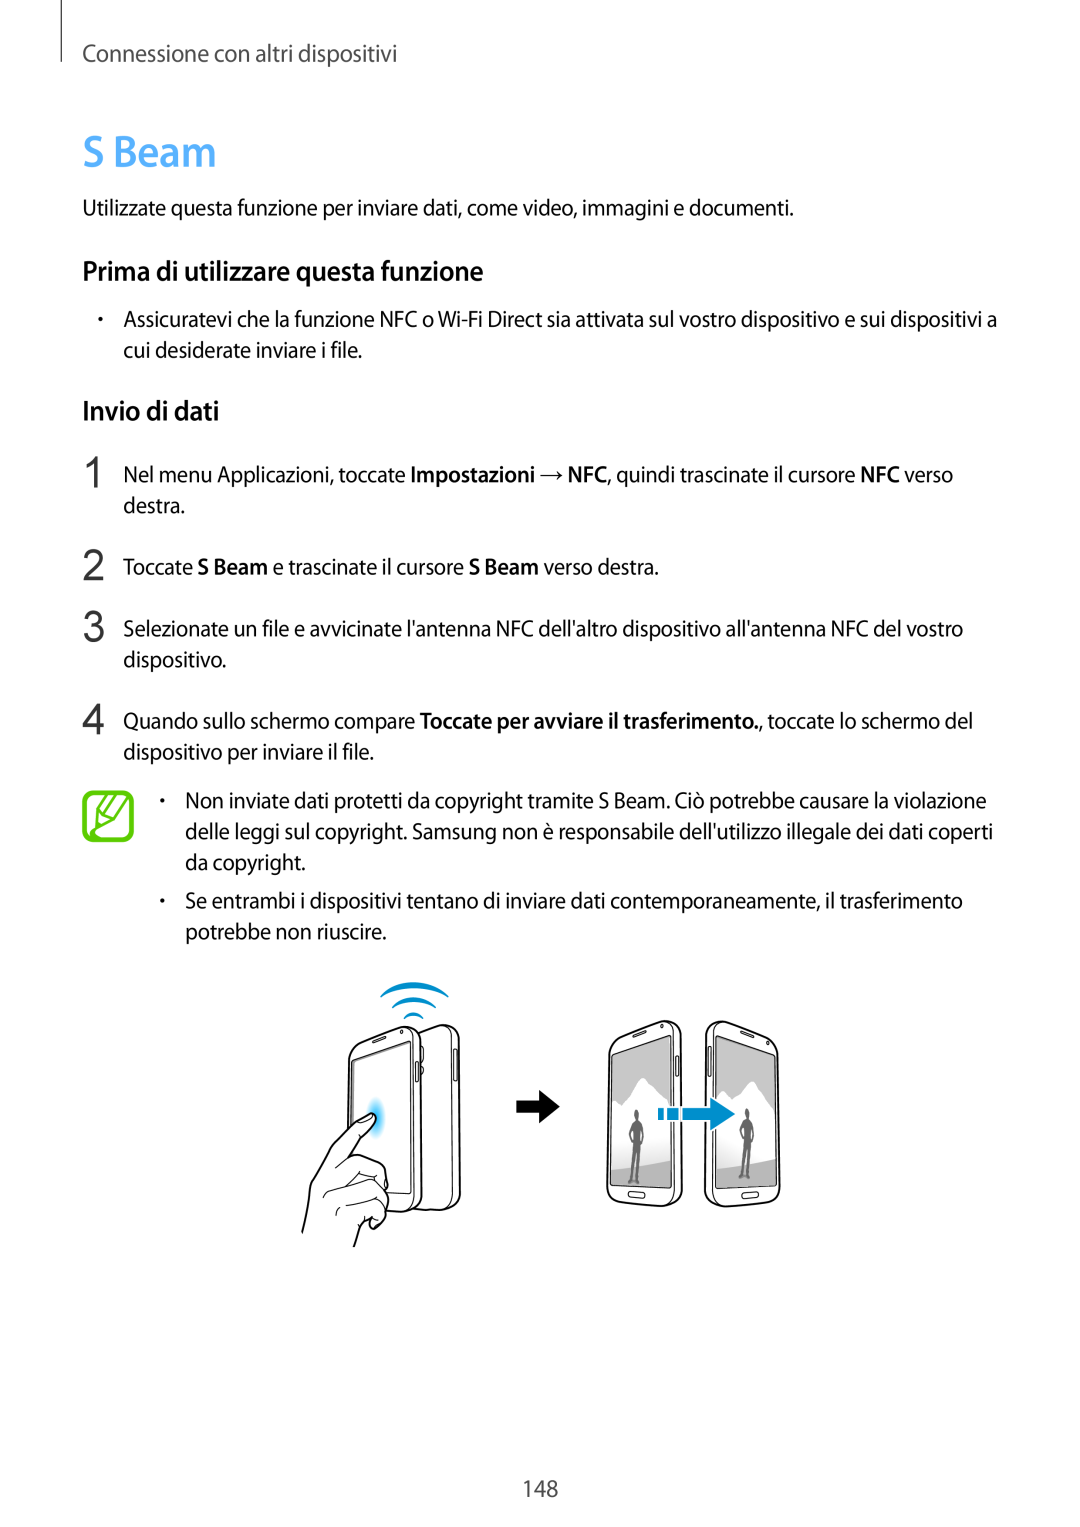 Samsung SM-G900FZWAAUT manual S Beam, Invio di dati, Prima di utilizzare questa funzione, Connessione con altri dispositivi 